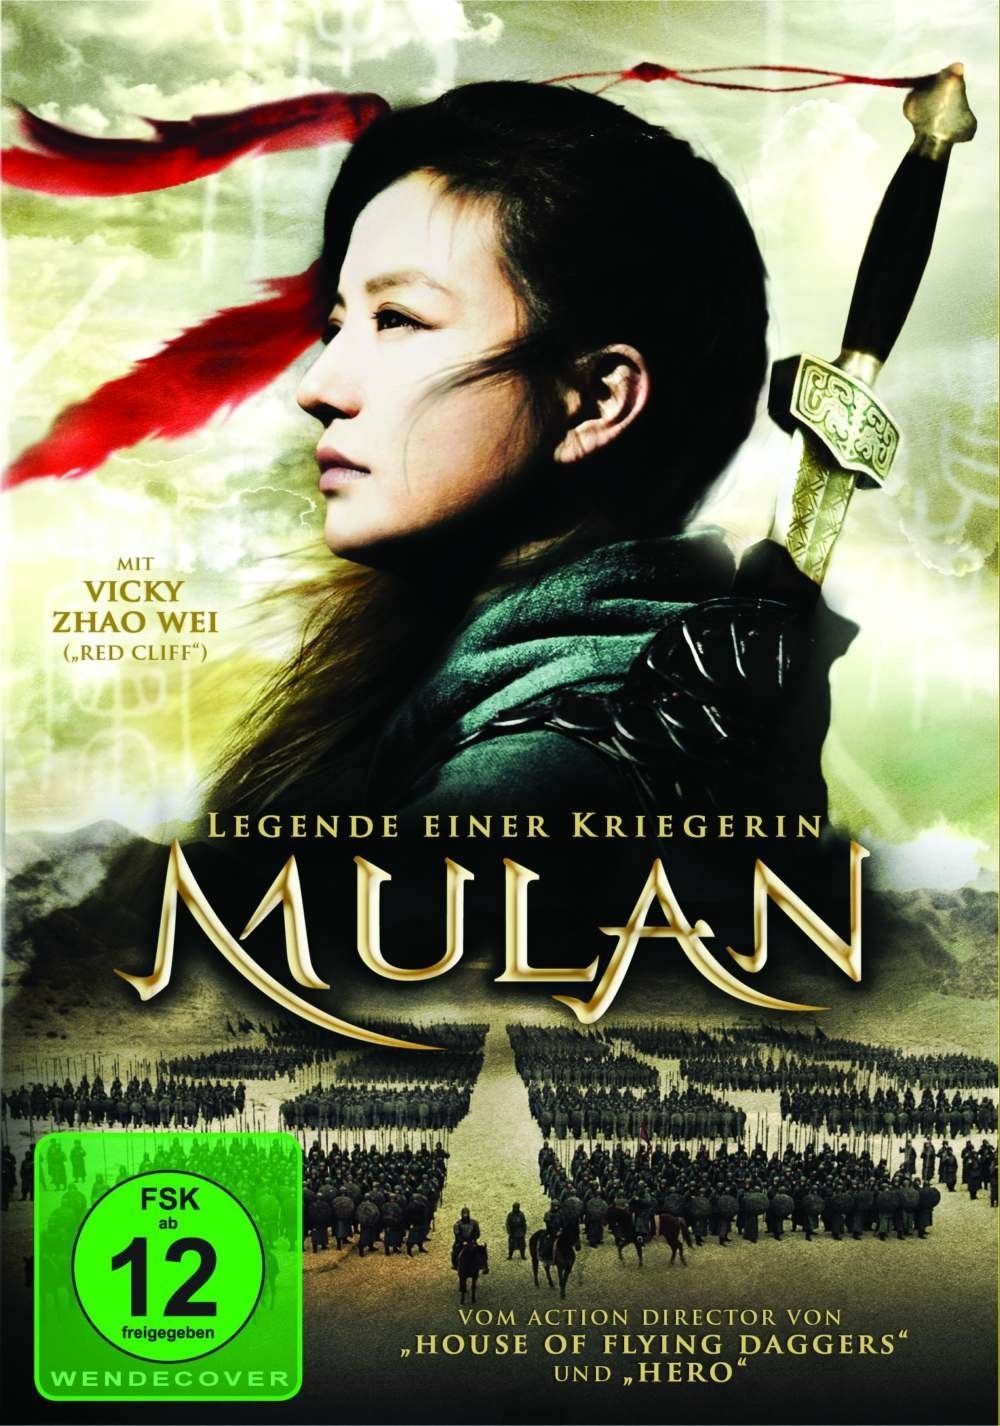 Affiches, posters et images de Mulan, la guerrière... (2009)